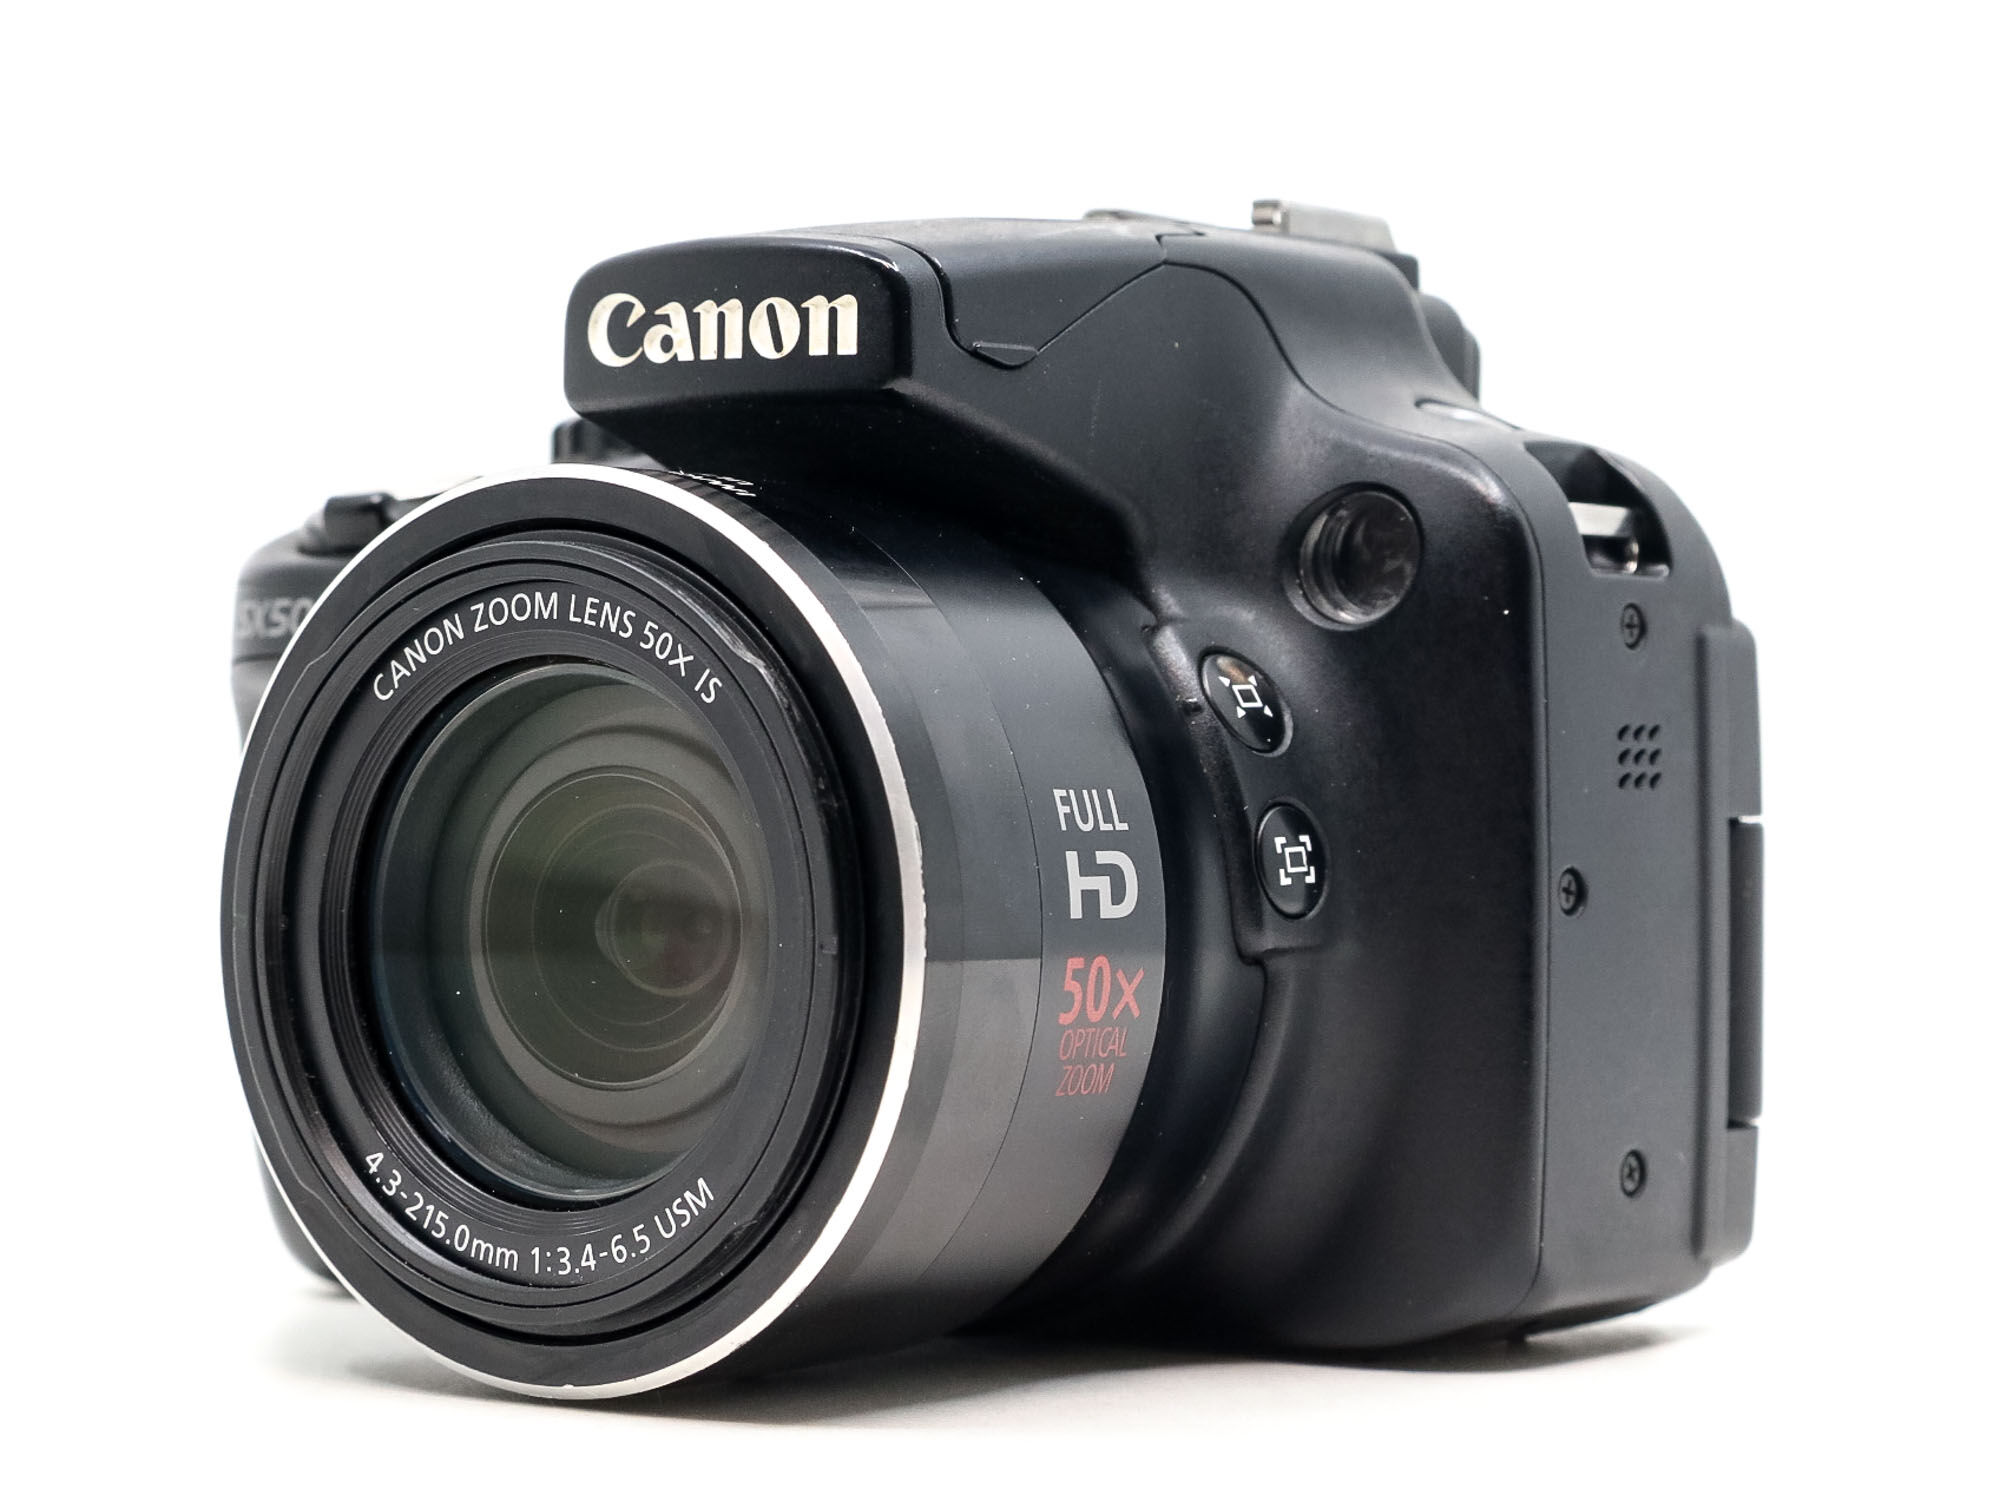 Canon PowerShot SX50 HS (Condition: Good)